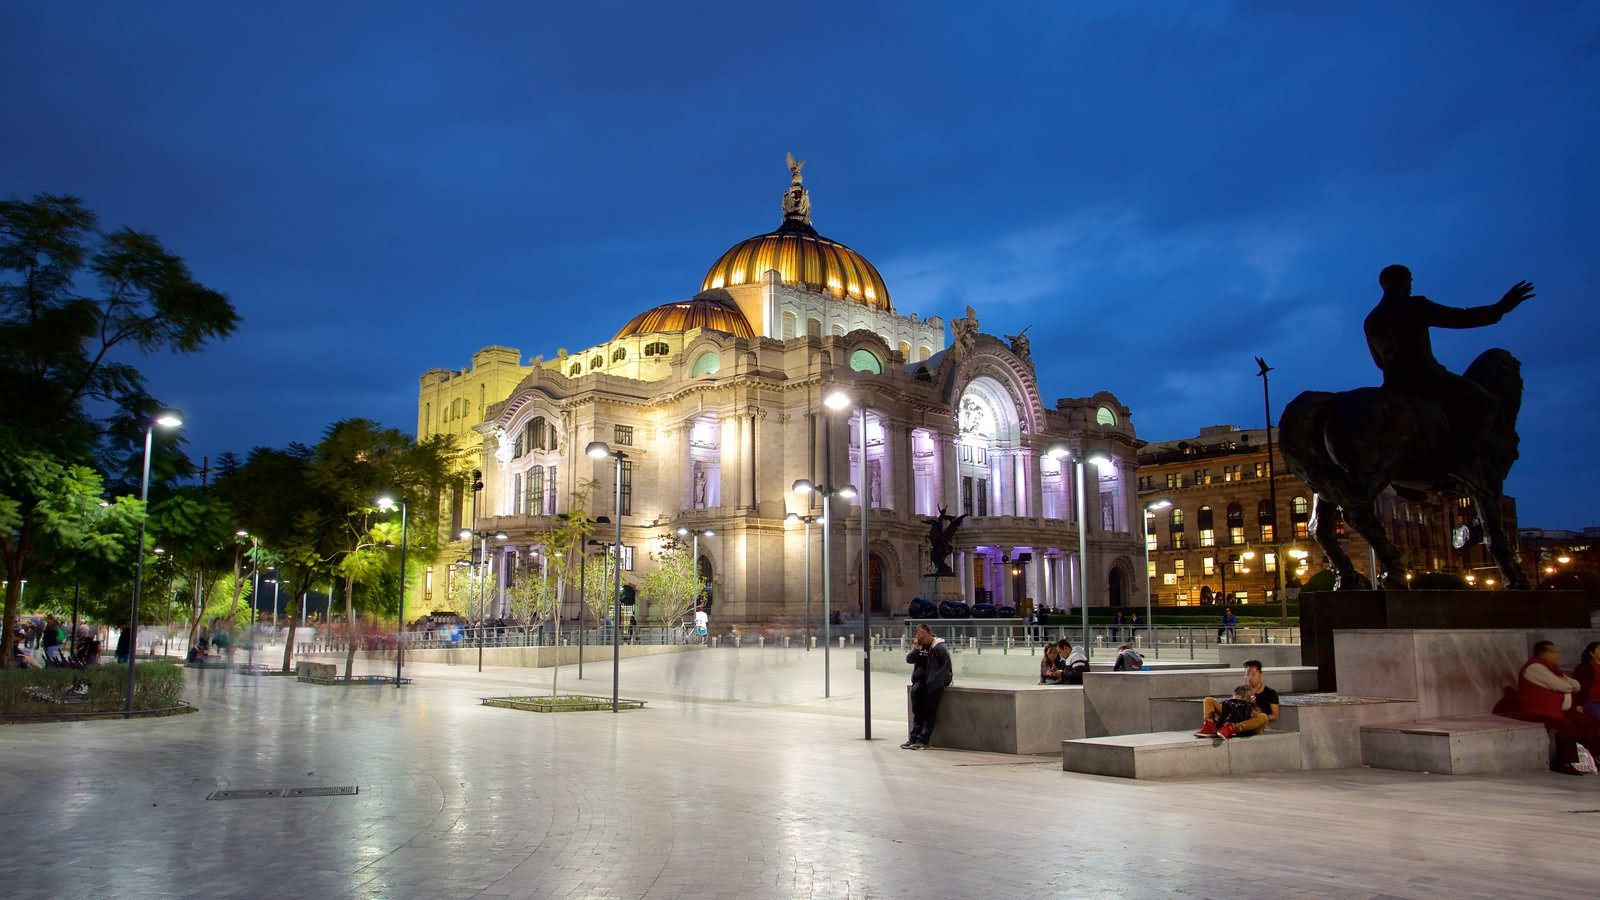 Side Picture Of The Palacio de Bellas Artes At Night